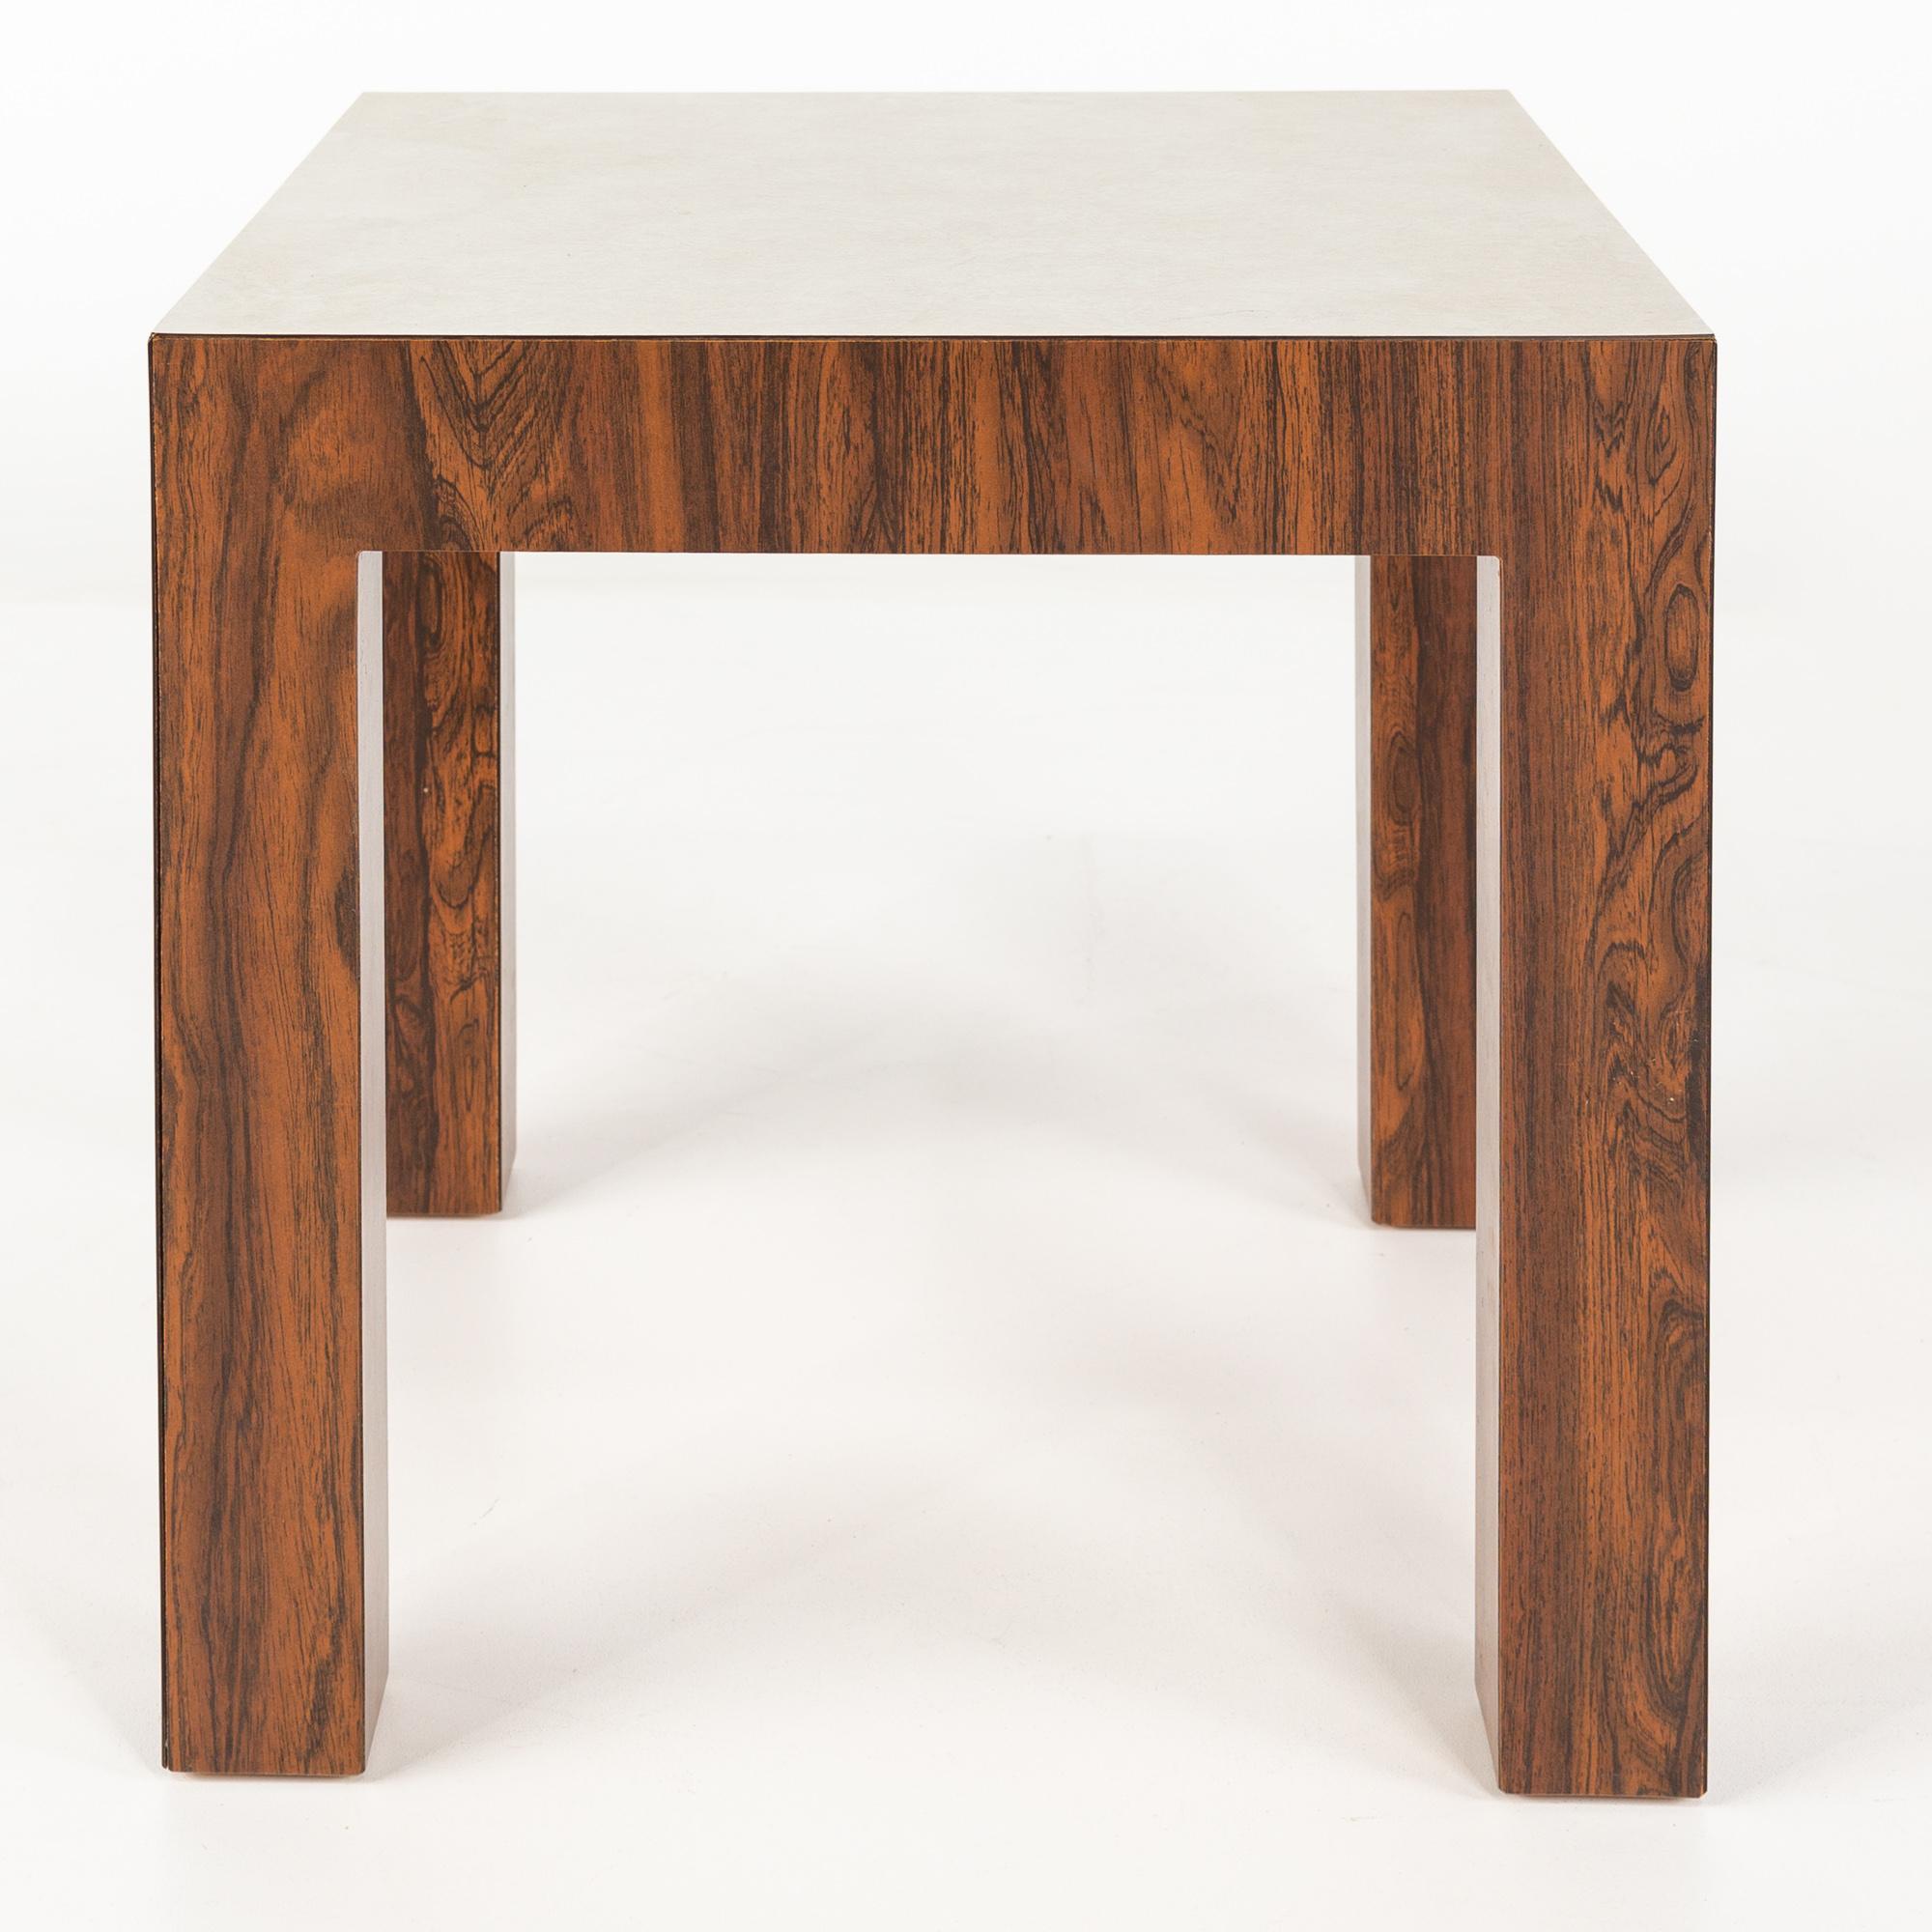 Table d'appoint en bois de rose et stratifié blanc, style Milo Baughman, milieu du siècle dernier

Cette table mesure : 20 de largeur x 20 de profondeur x 19 pouces de hauteur

Tous les meubles peuvent être obtenus dans ce que nous appelons un